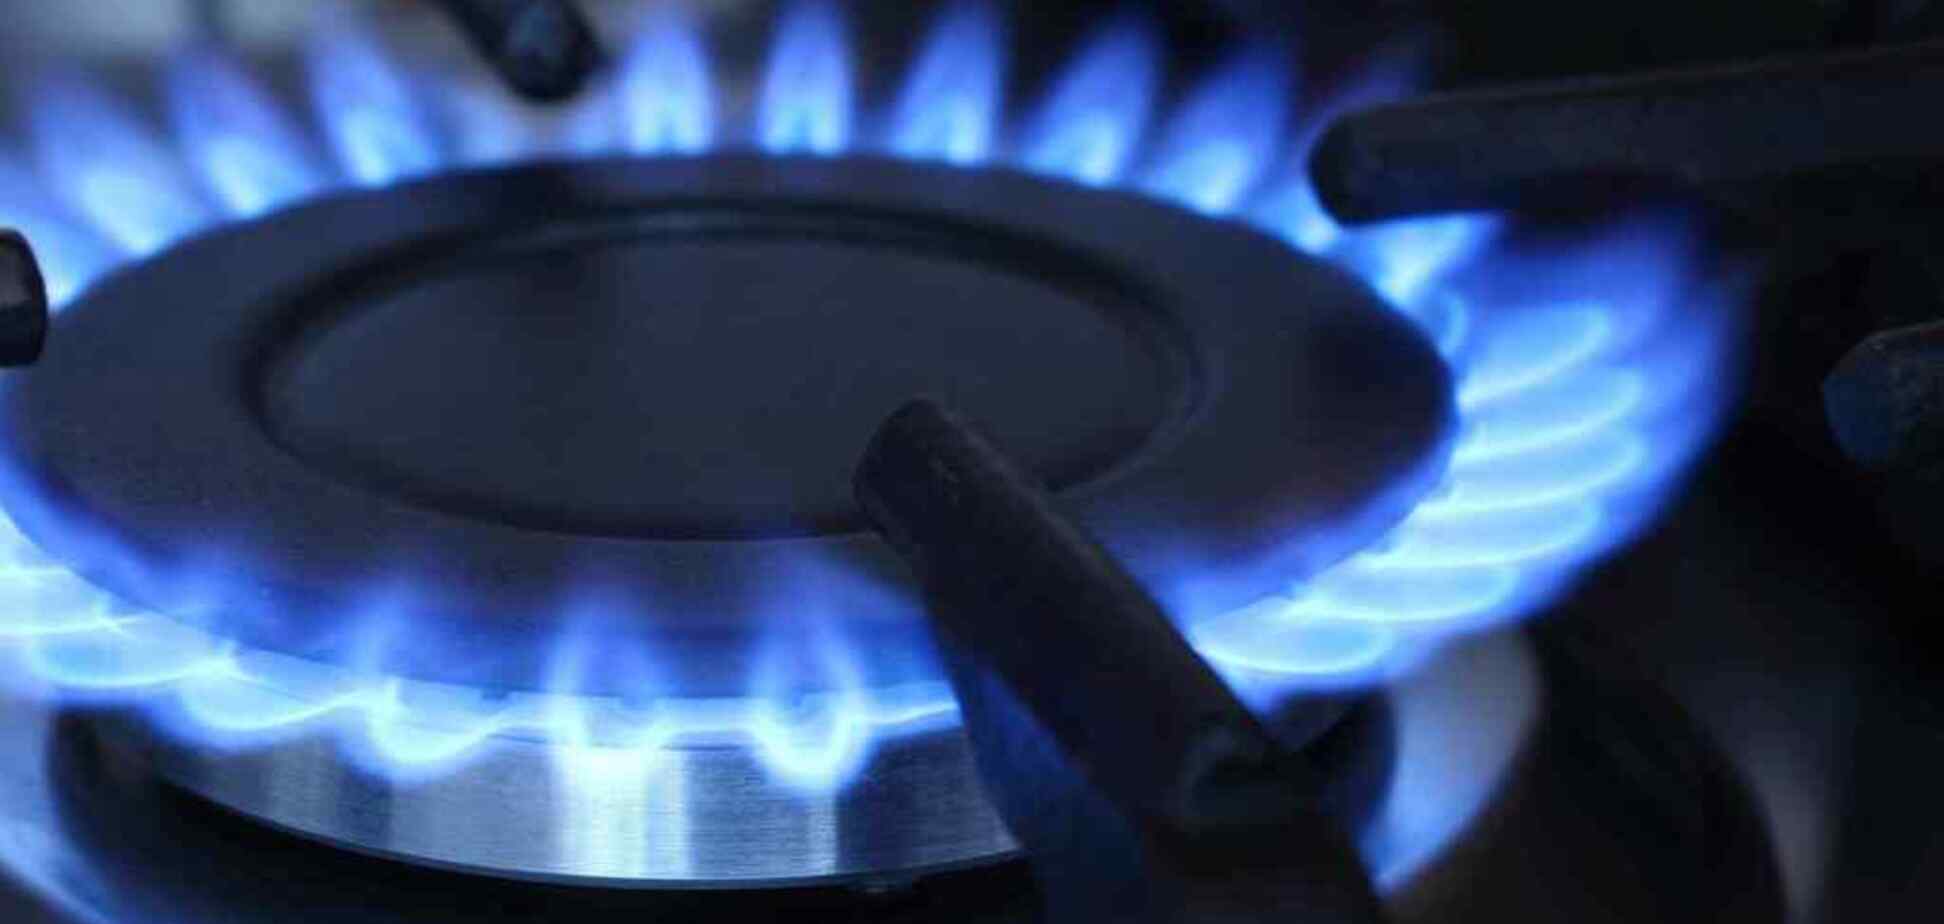 В Украине резко изменится тариф на газ: сколько заплатим